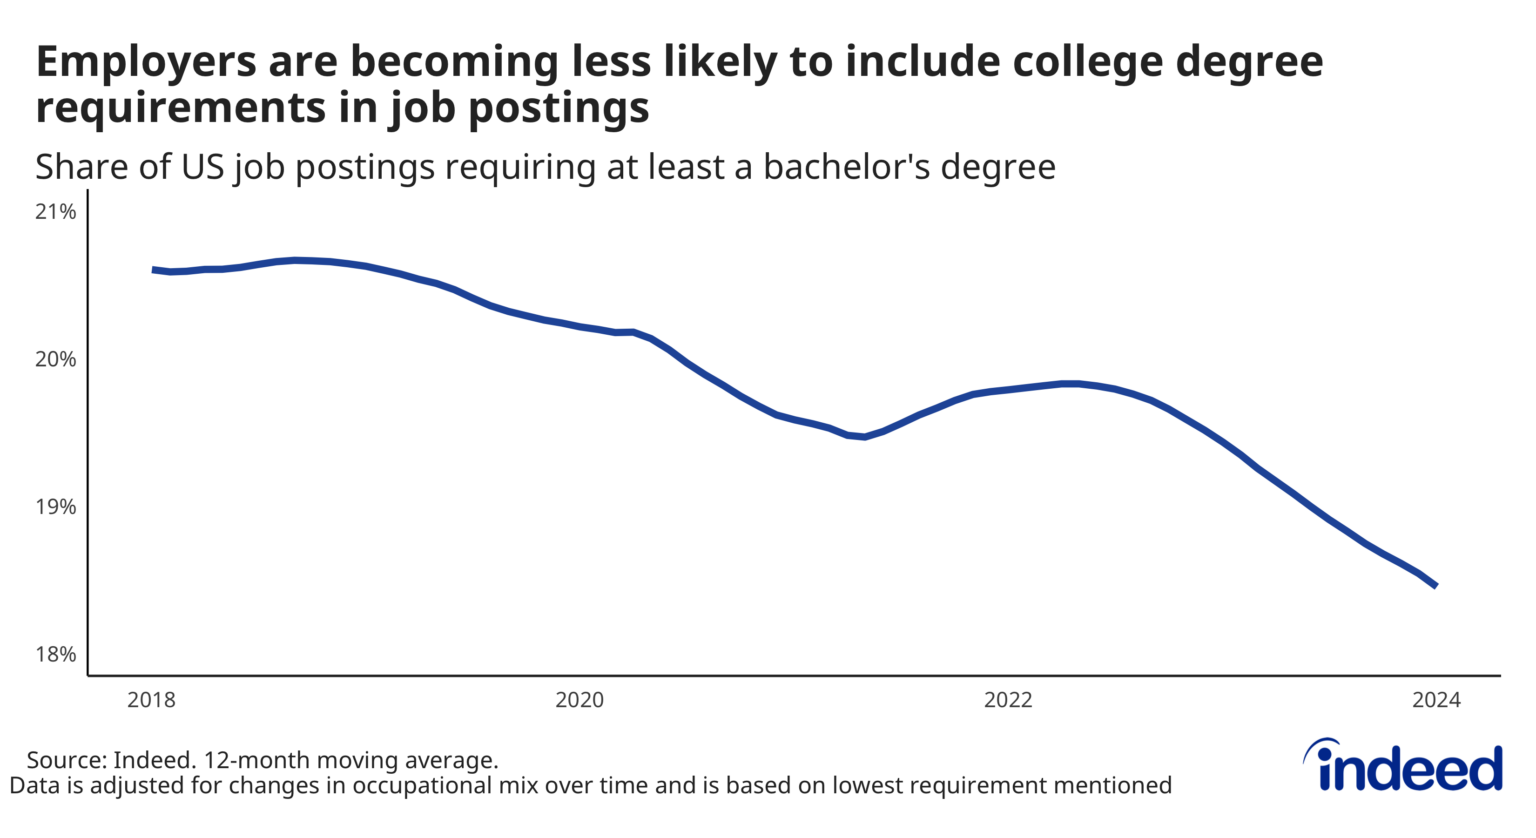 米国における学位を求める求人の割合の推移を示したグラフ